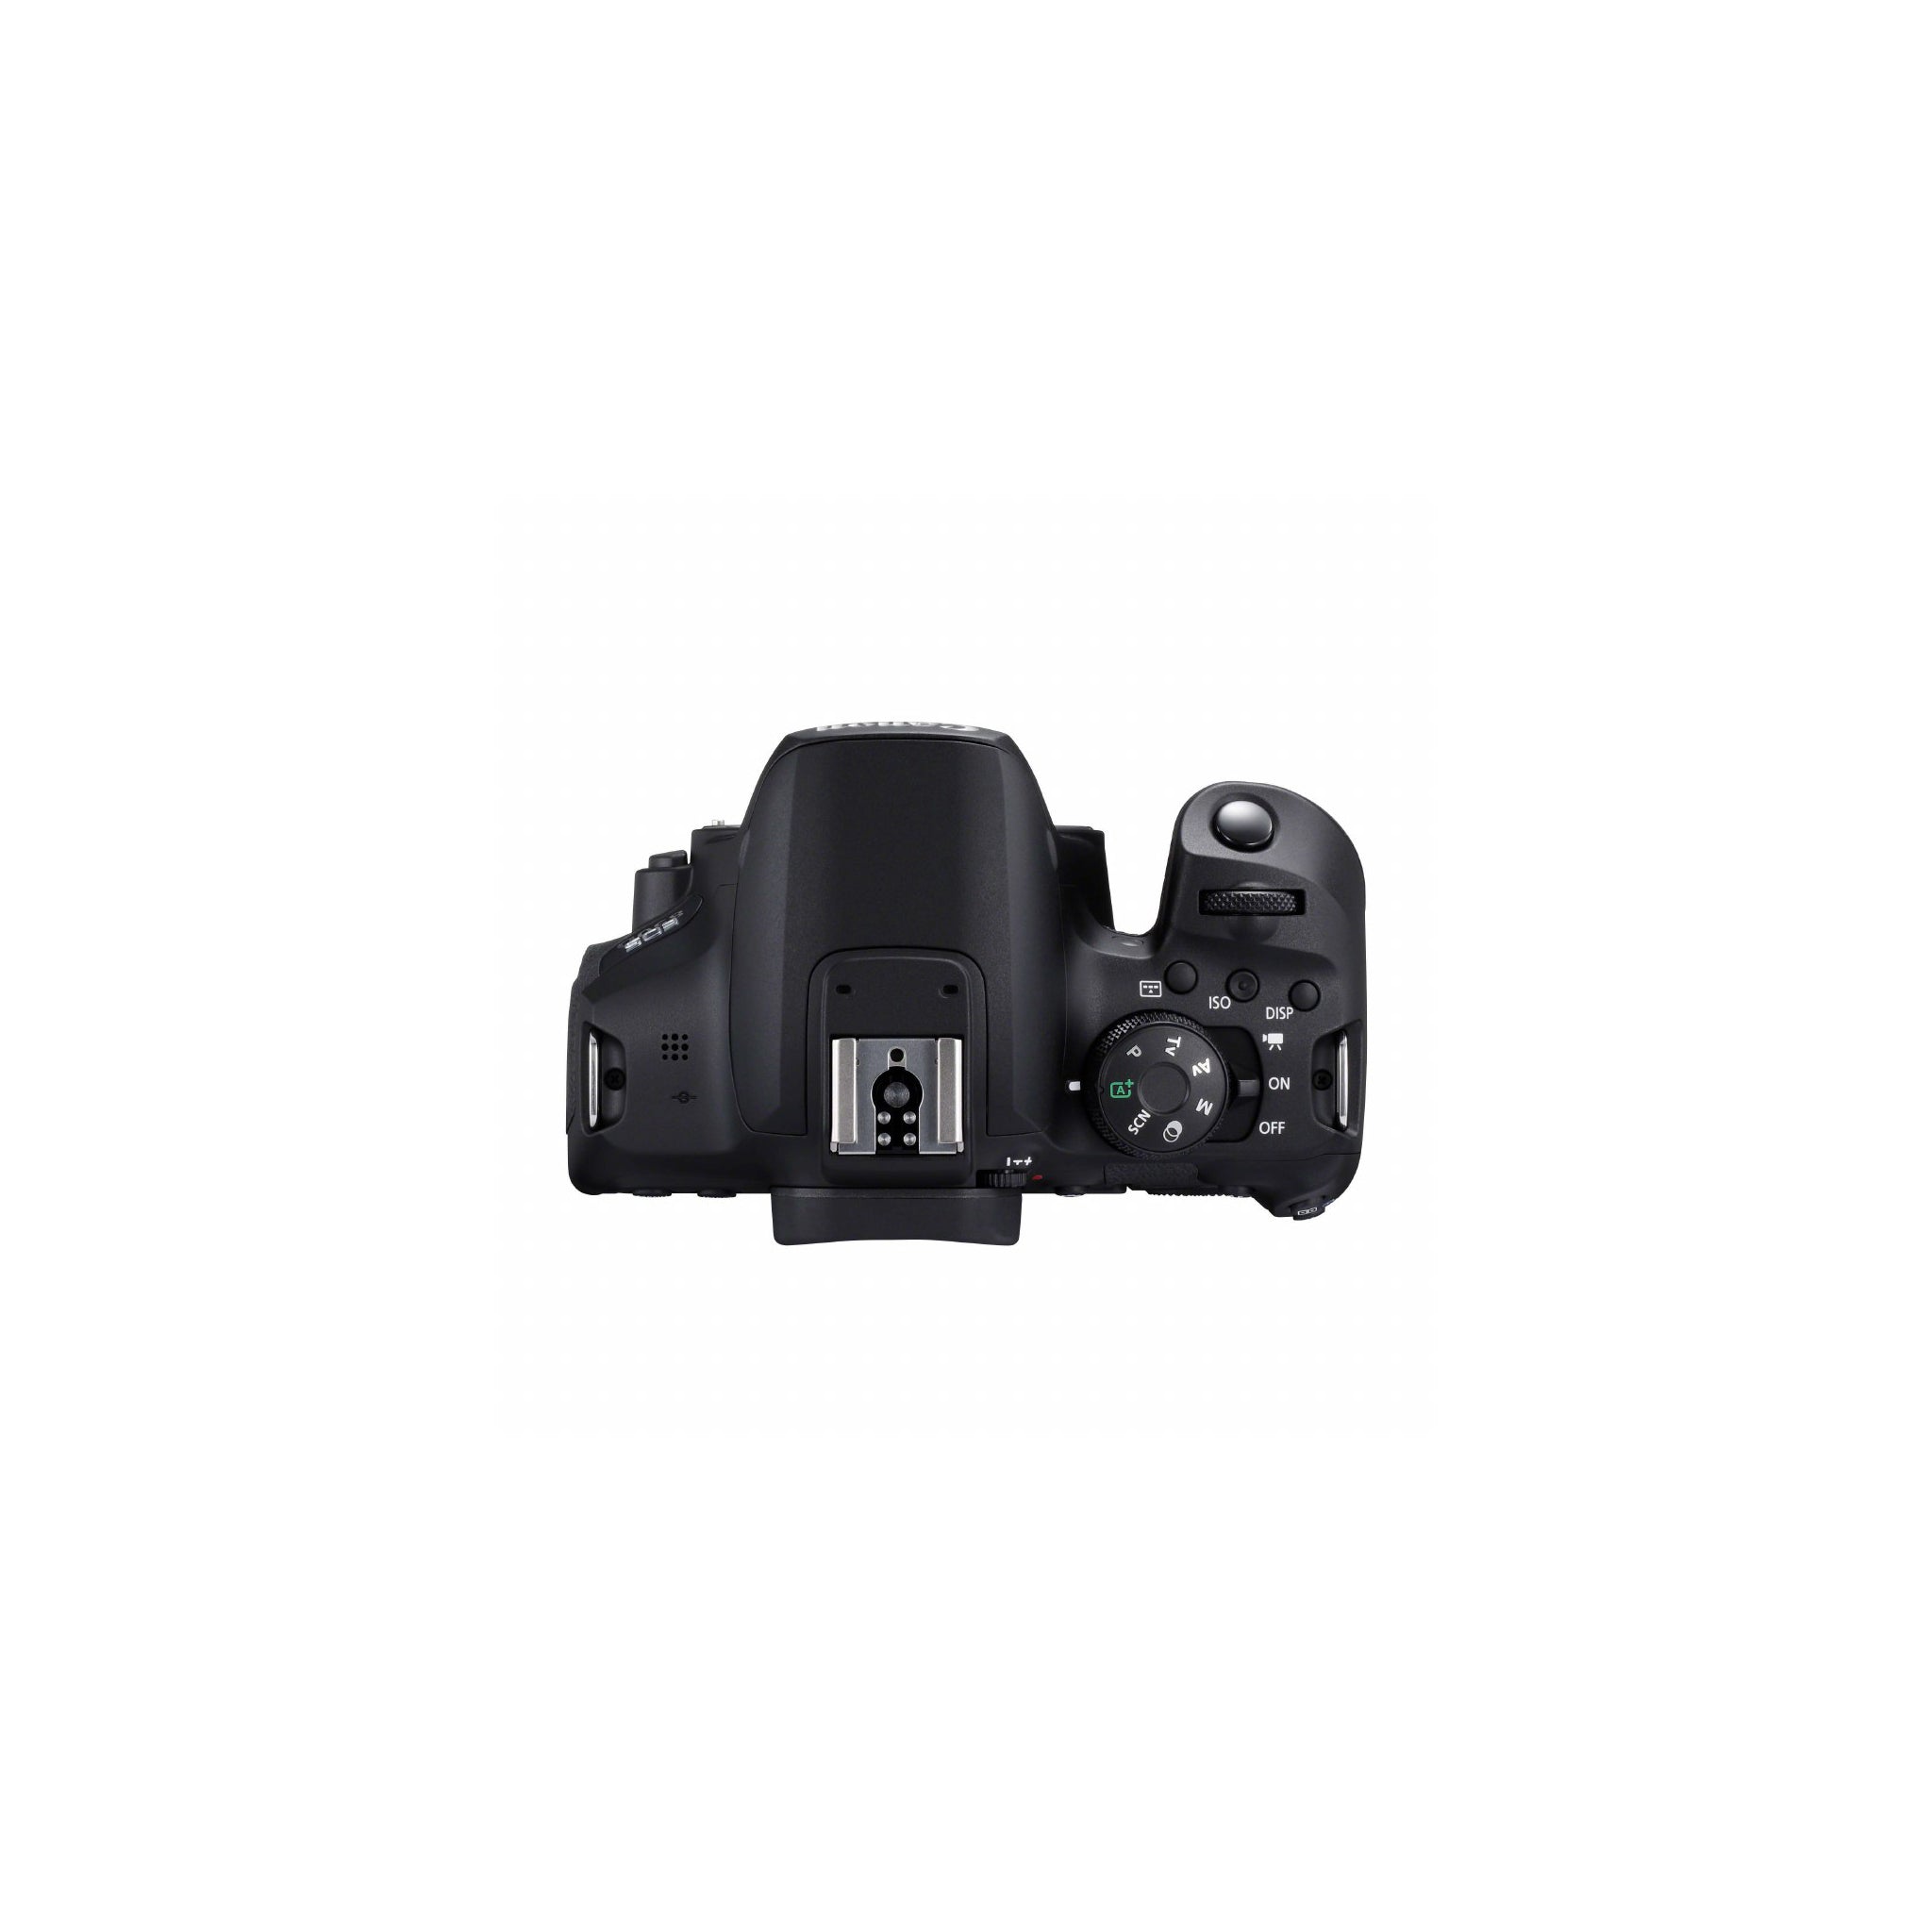 Canon EOS 850D Camera